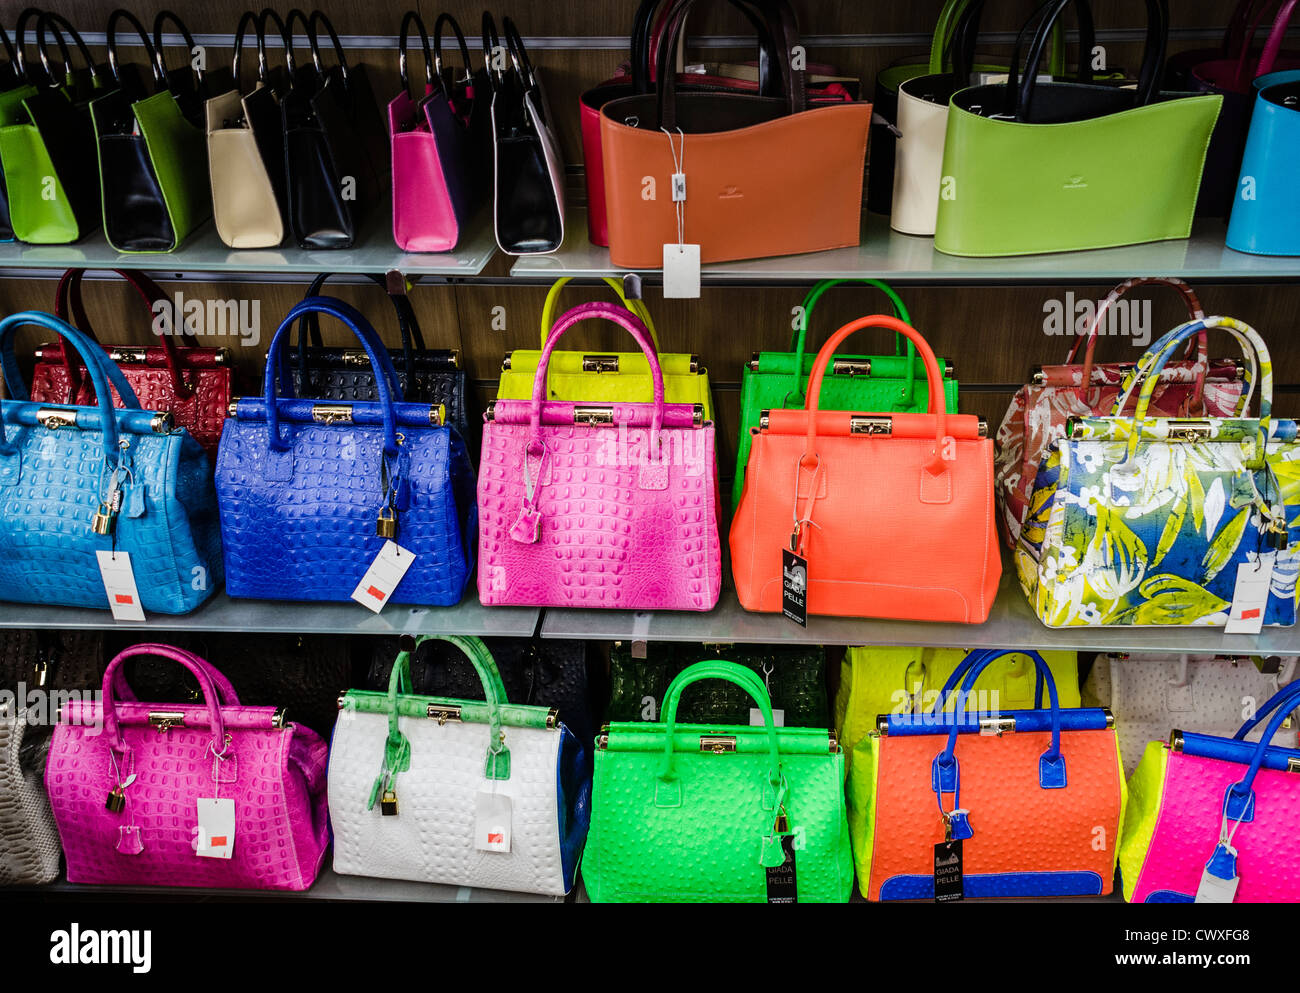 Bunte Handtaschen aus Leder in einem Geschäft in der Toskana, Italien  Stockfotografie - Alamy